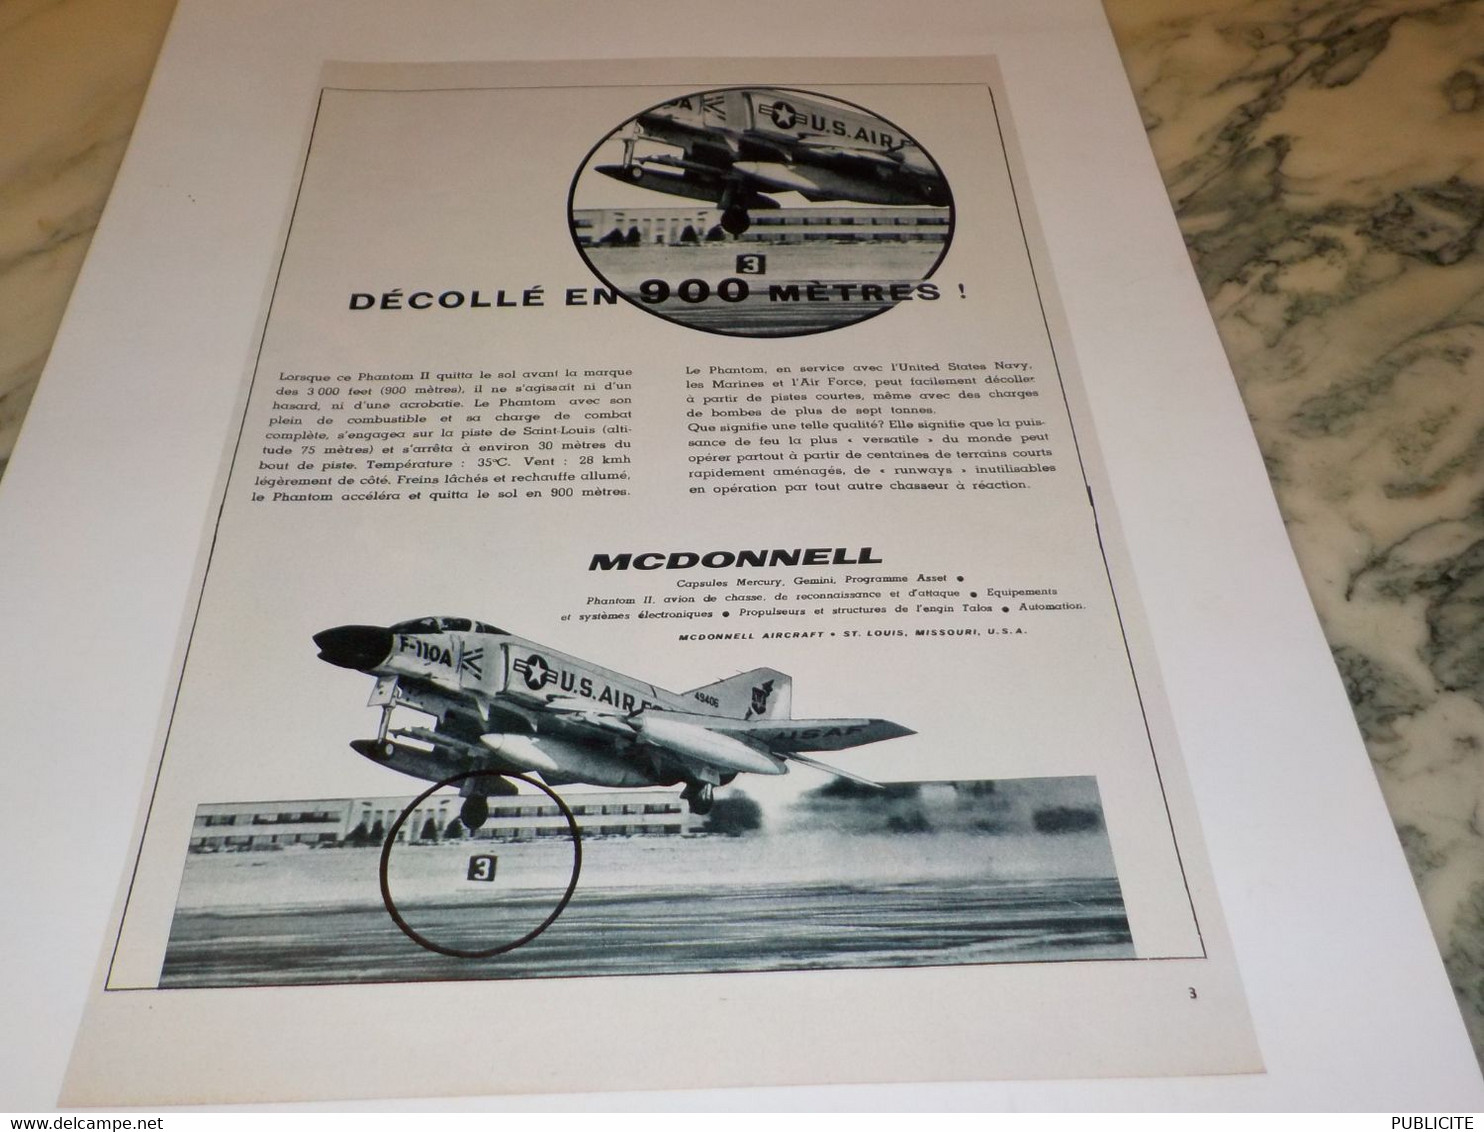 ANCIENNE PUBLICITE AVION DECOLLE EN 900 METRES PAR MC DONNELL  1963 - Publicités